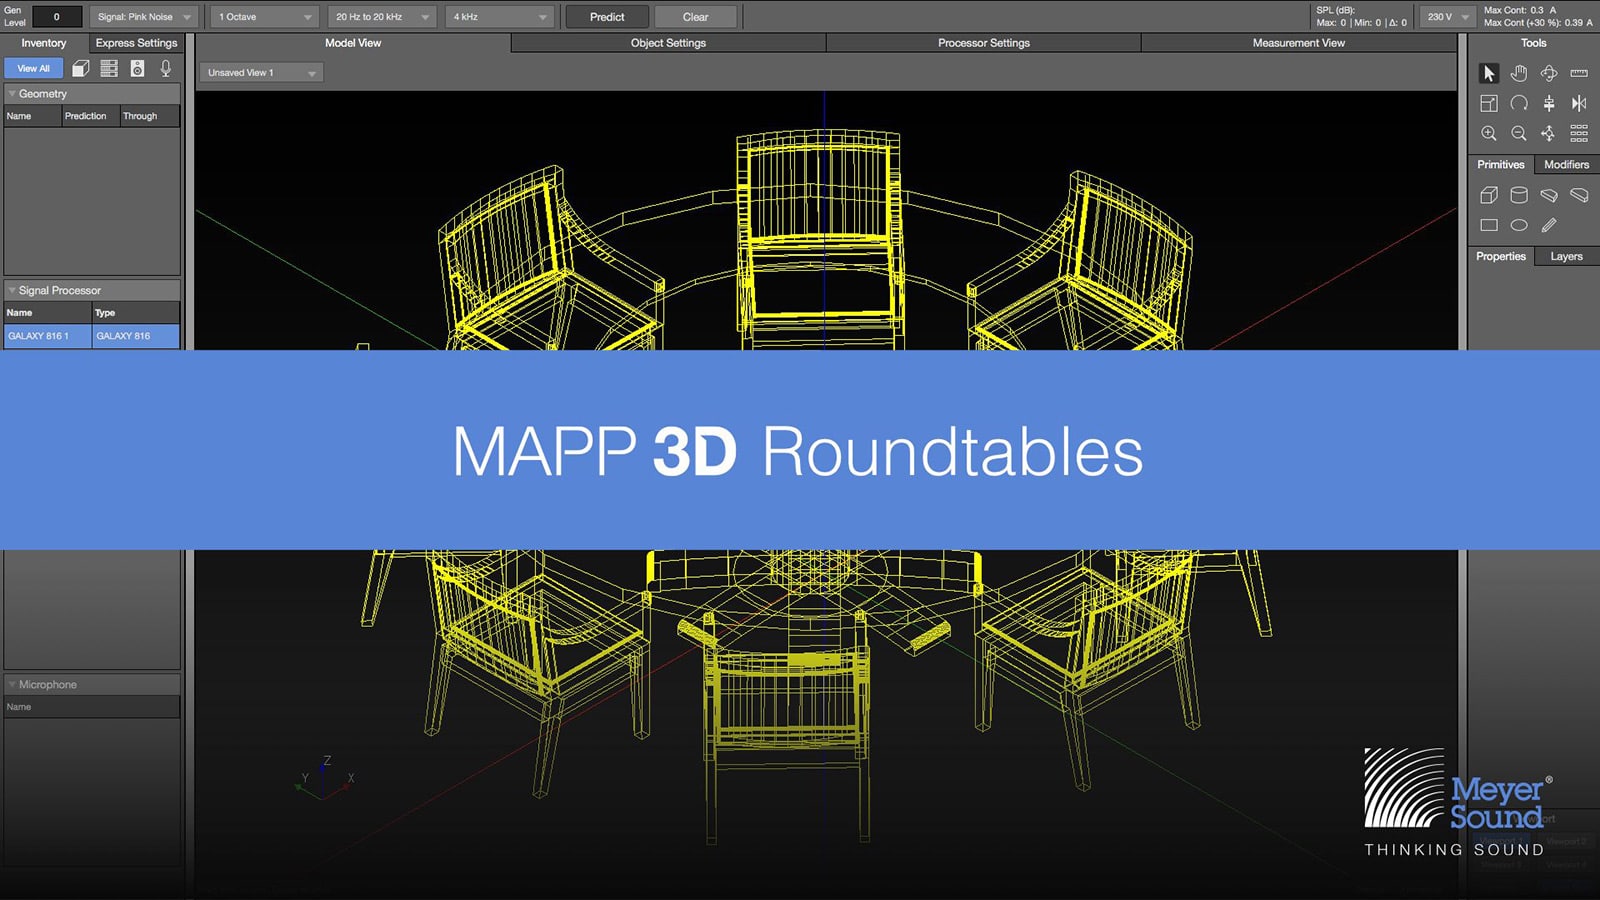 Meyer Sound Announces Public MAPP 3D Roundtable Series